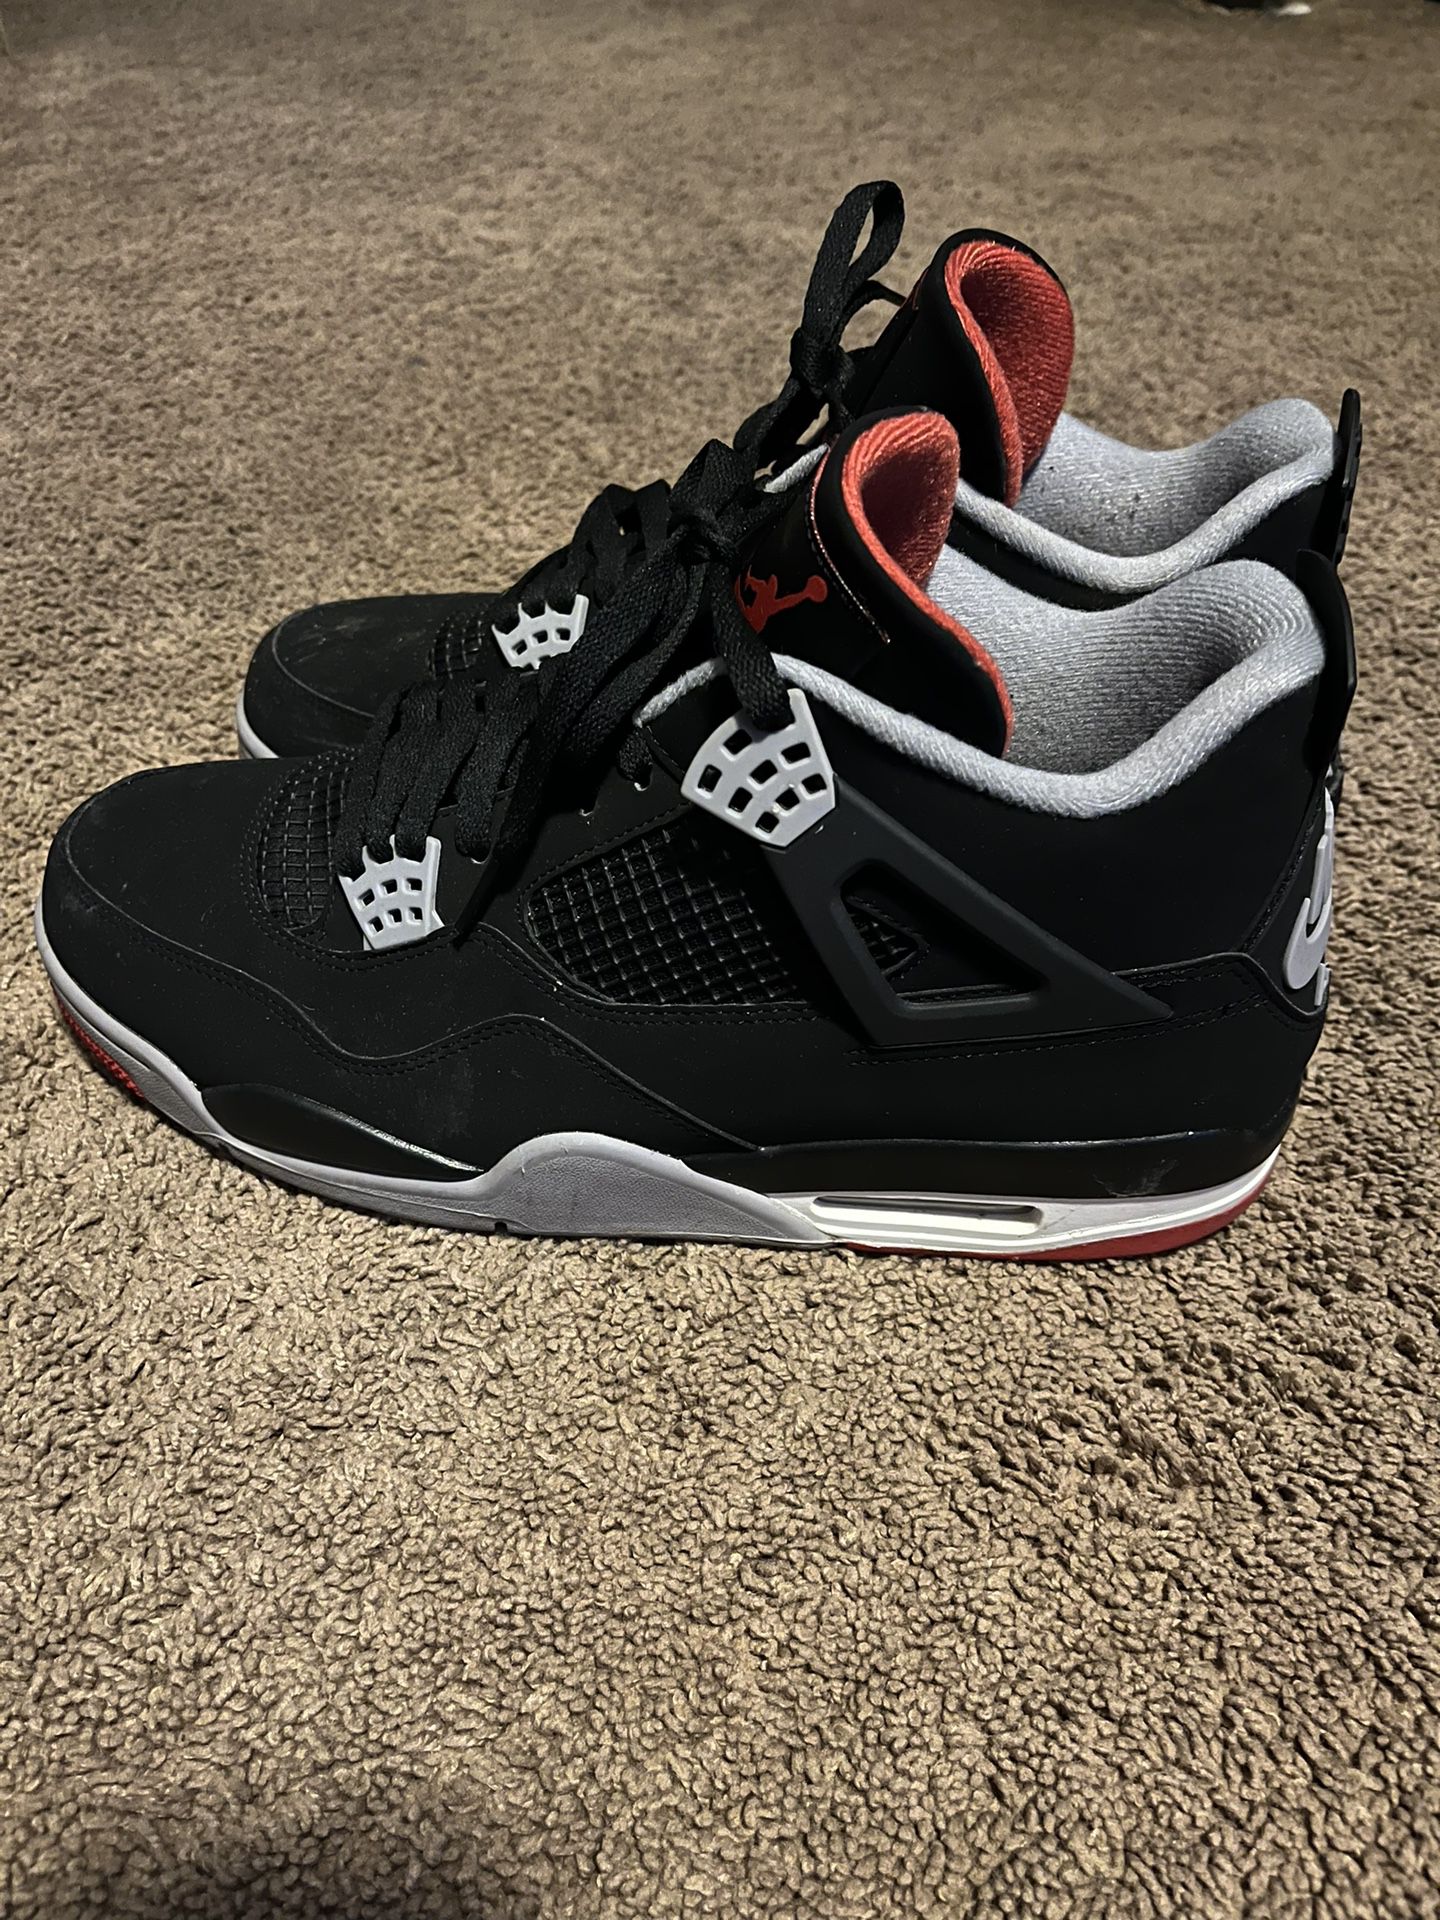 Size 13- OG Jordan 4 Breds (No Box)